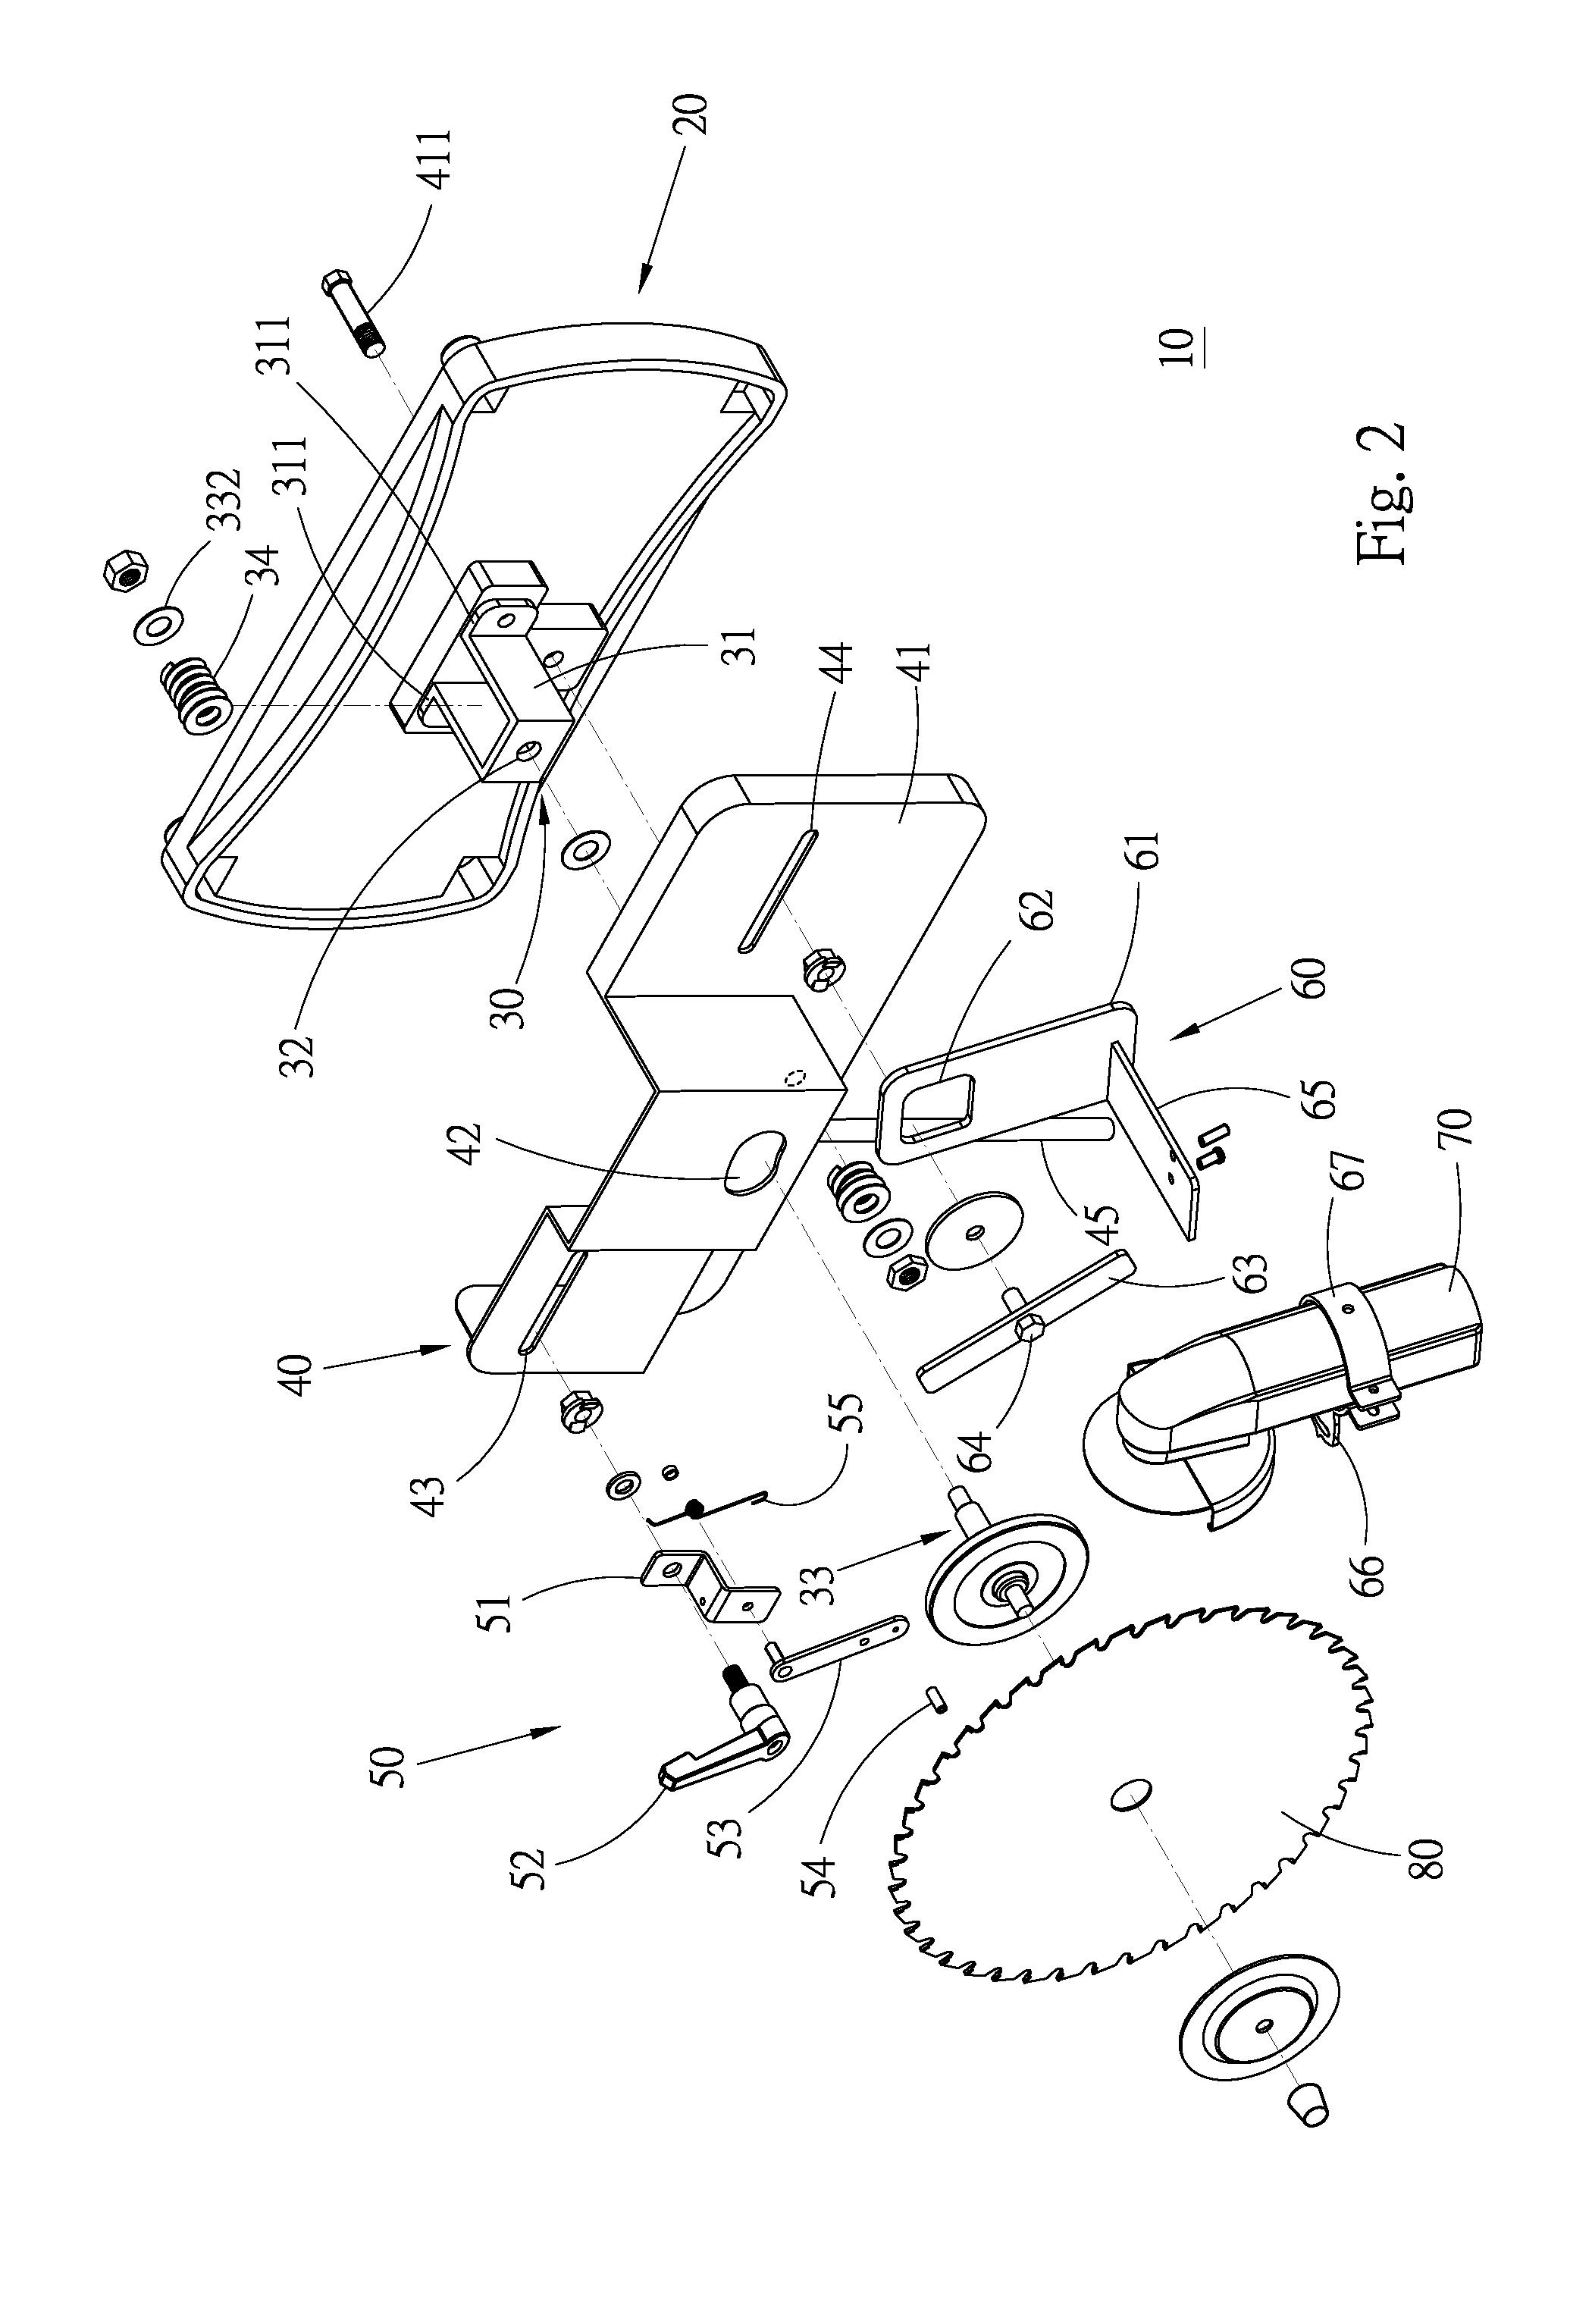 Bed-type circular saw blade grinder